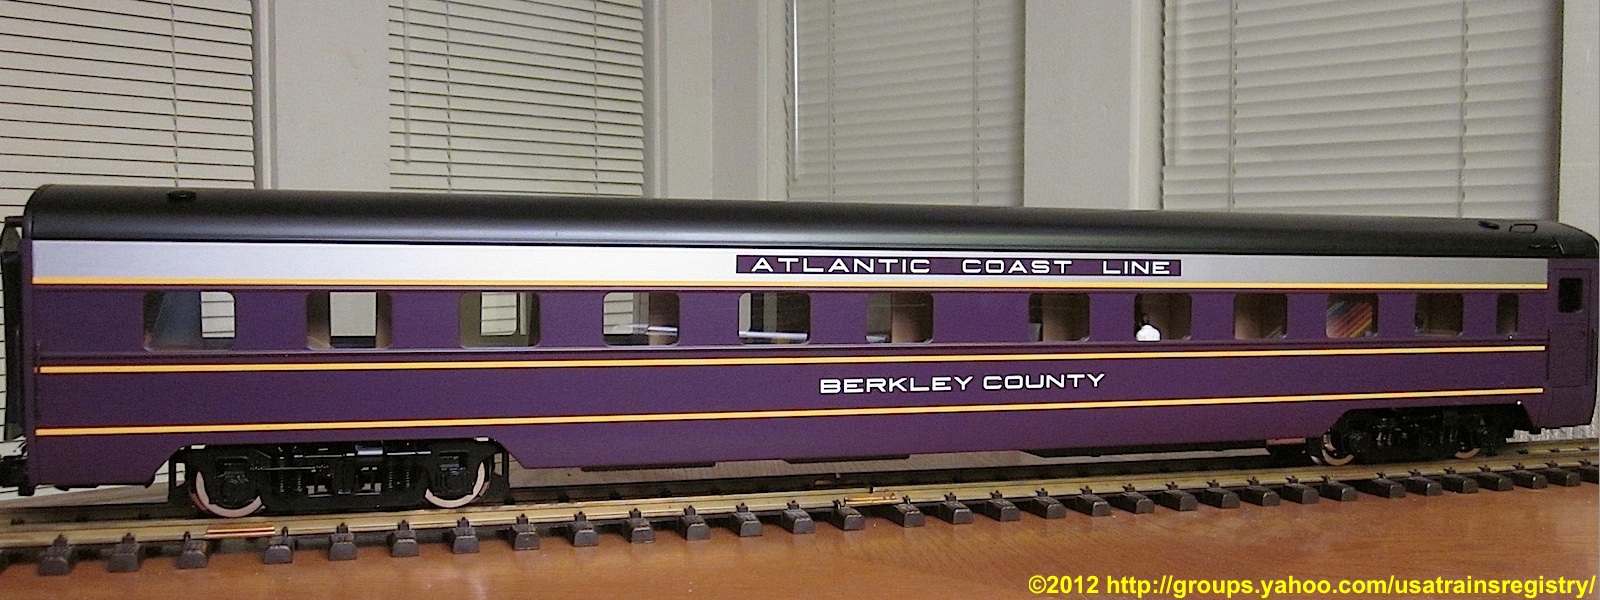 Atlantic Coast Line Streamliner Schlafwagen (Sleeper) Berkley County